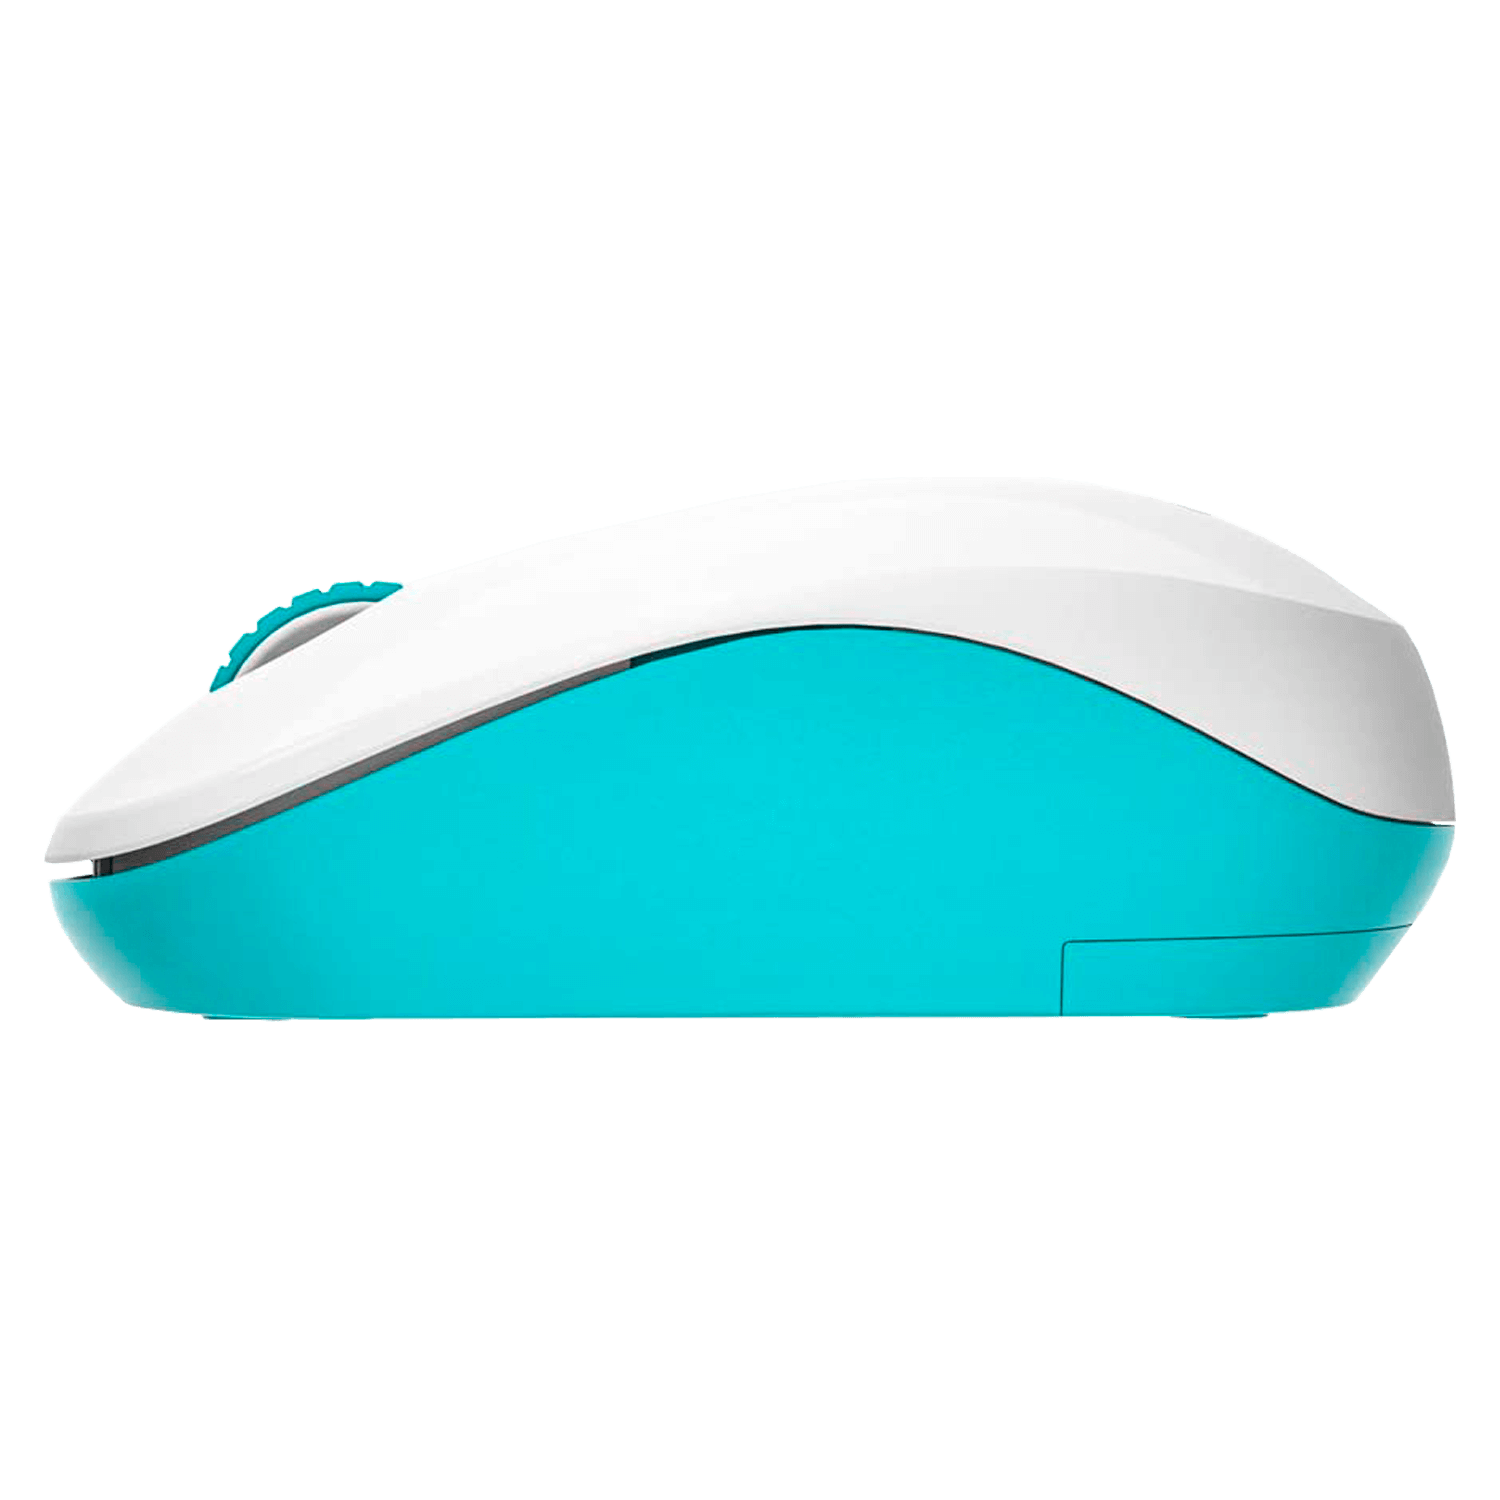 Mouse Aigo M35 Wireless - Branco e Verde